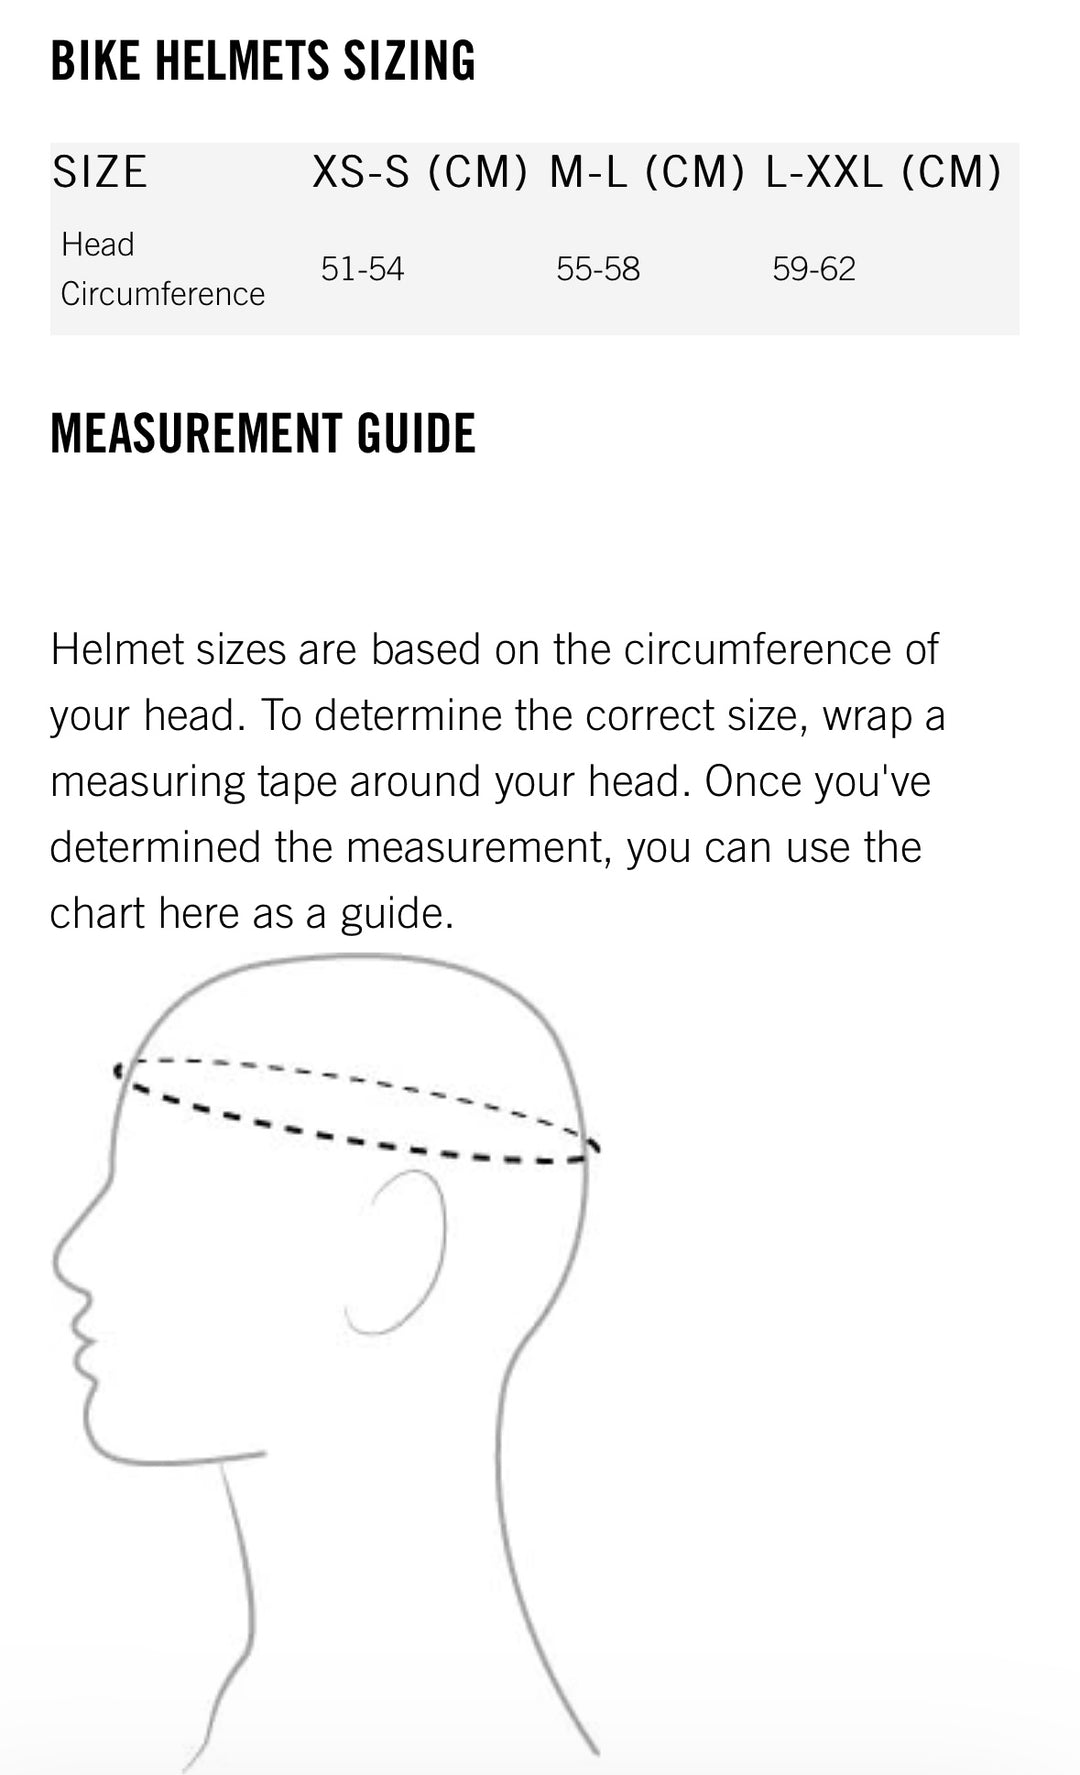 Poc Tectal Helmet - Poc -3ride.com